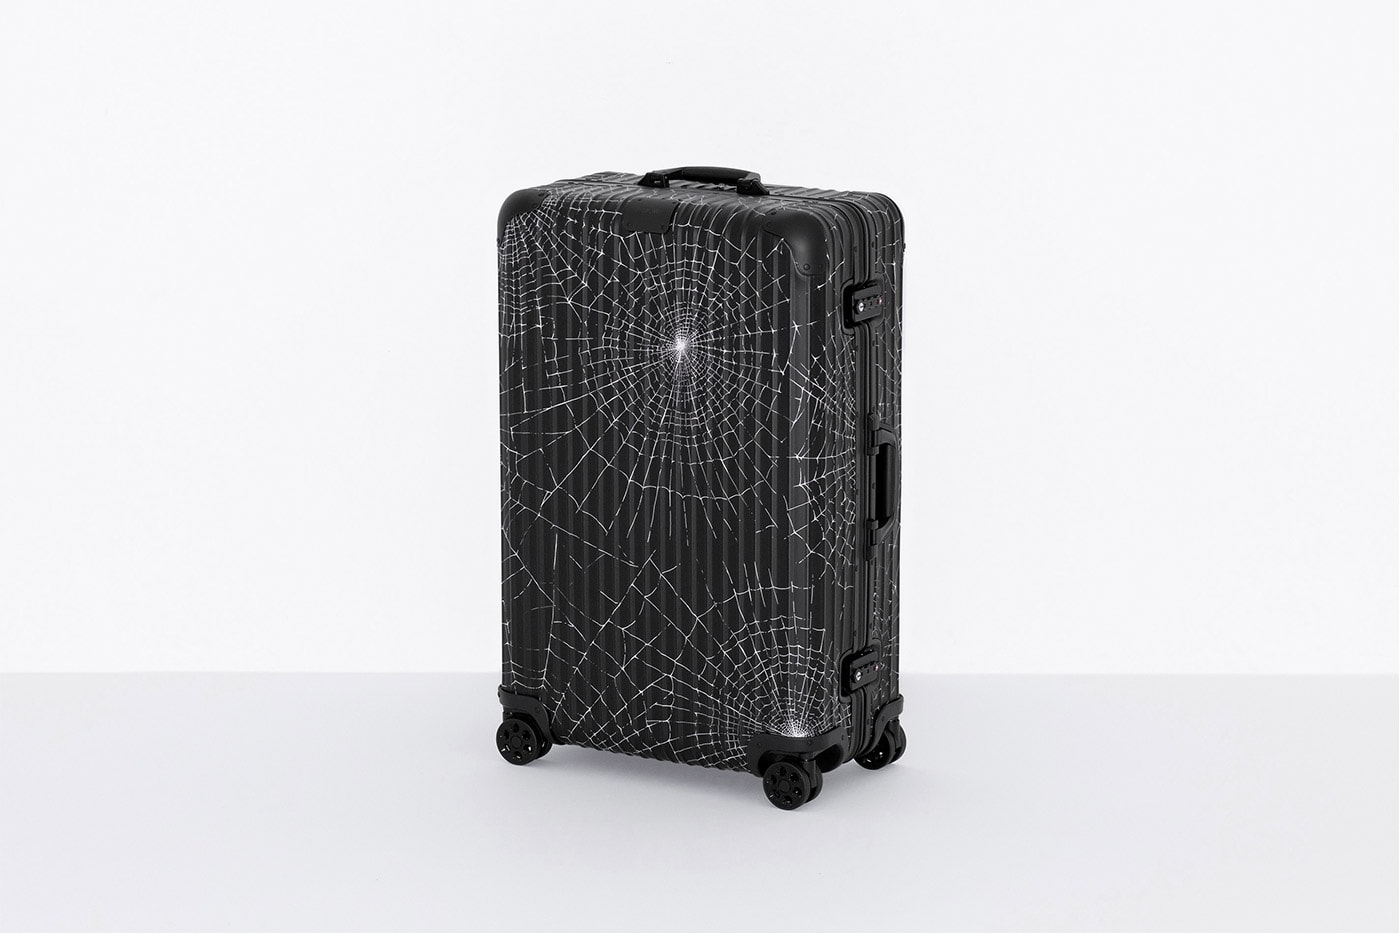 Supreme x RIMOWA Spring 2019 Custom Suitcases aluminum bodies black anodized spiderweb monogram print